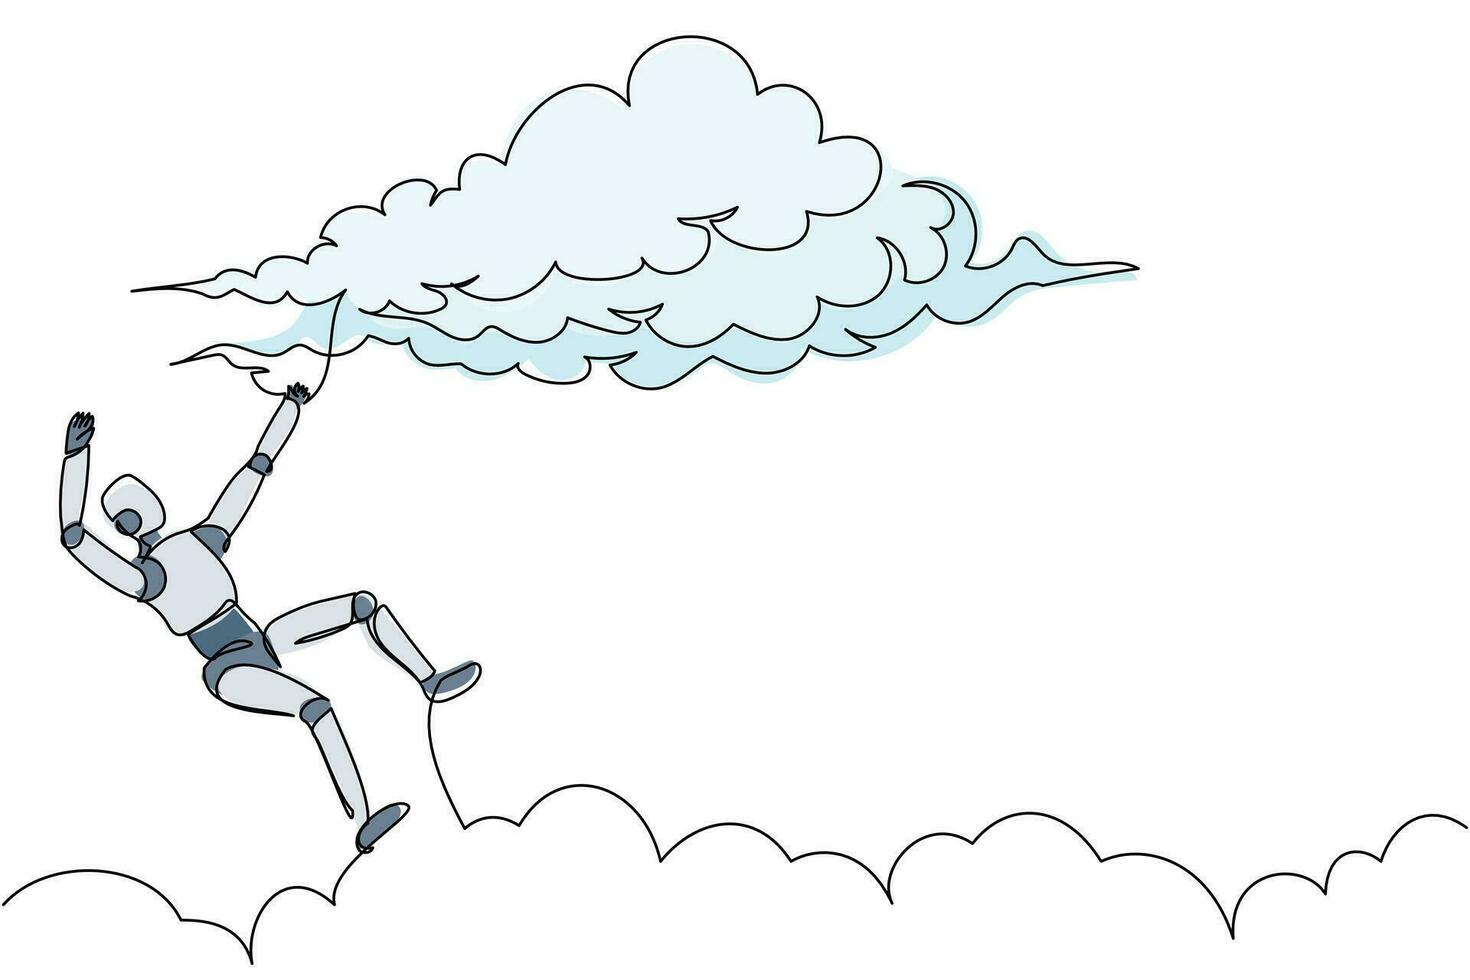 single doorlopend lijn tekening pech robot vallend van wolk lucht. verliest bedrijf of functie. robot kunstmatig intelligentie. elektronisch technologie industrie. een lijn grafisch ontwerp vector illustratie